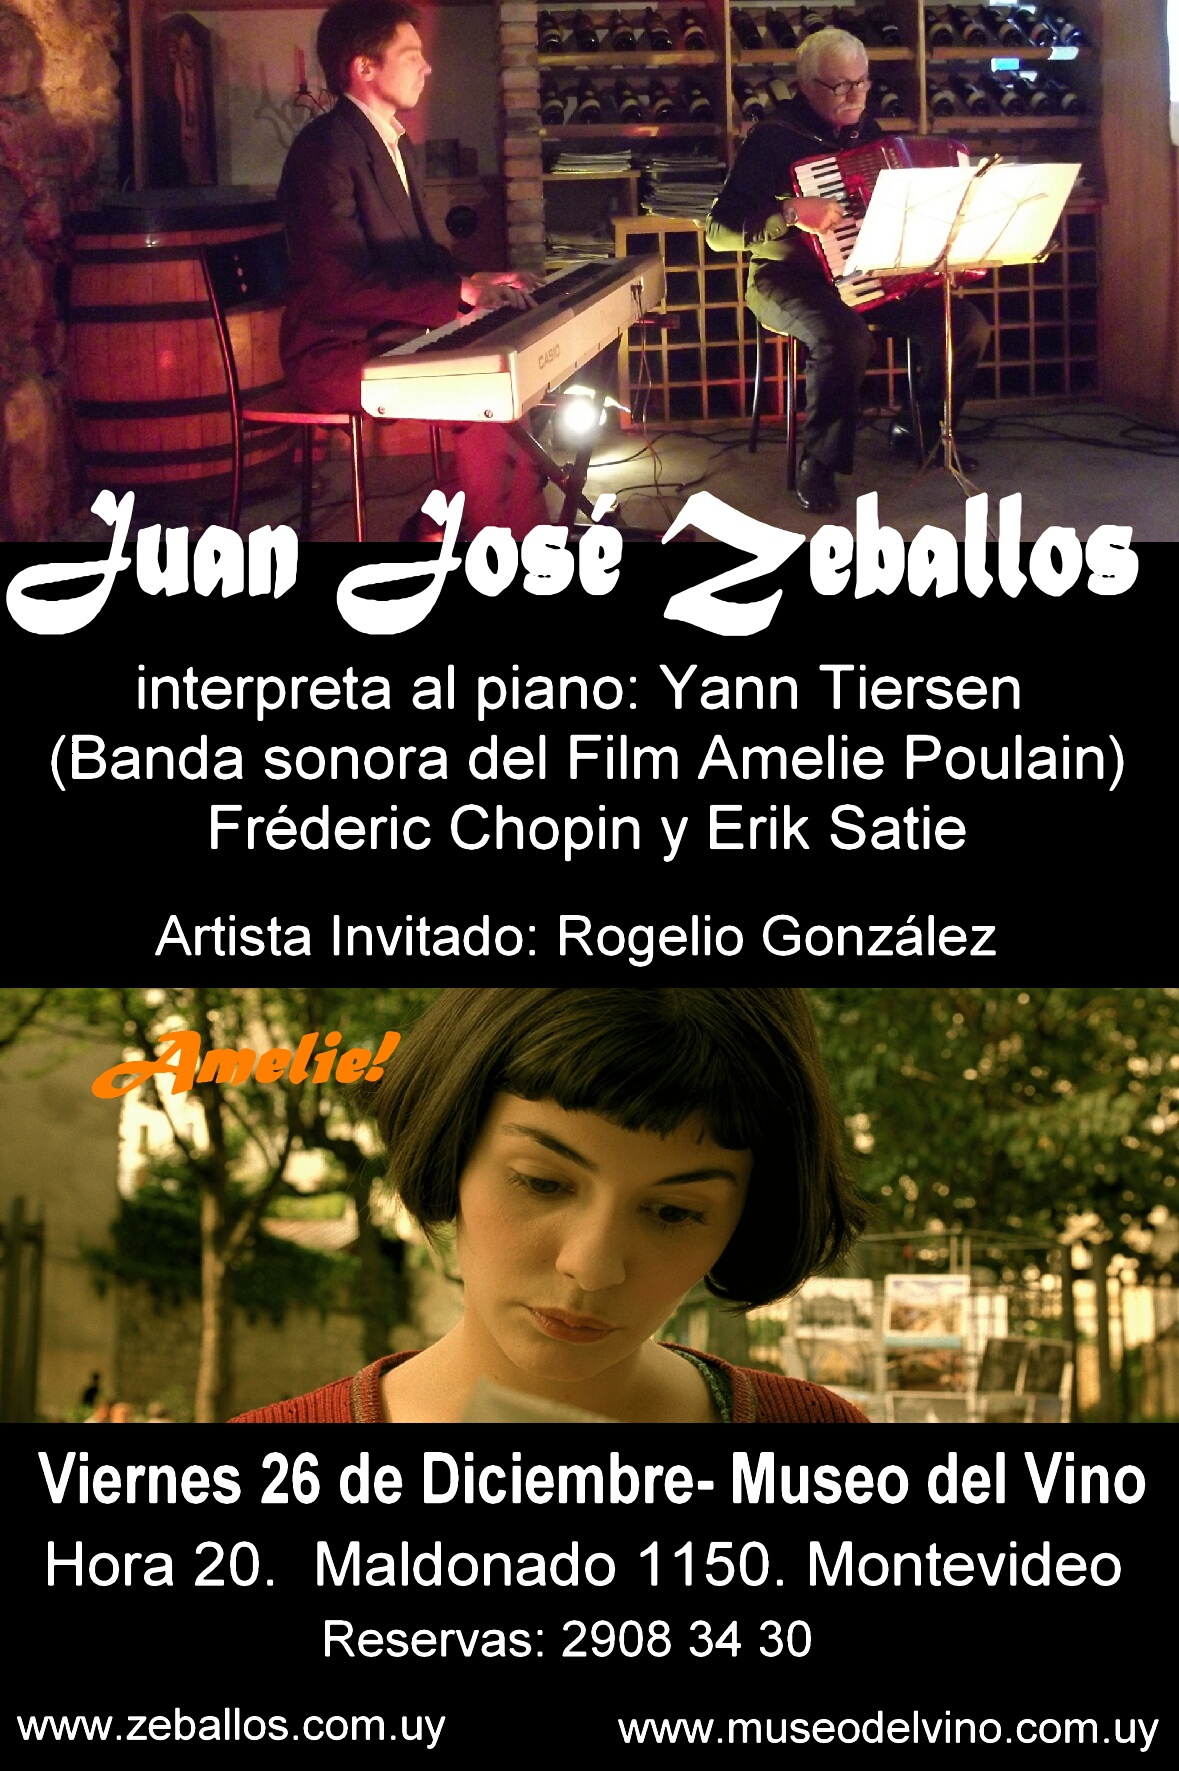 Última presentación de 2014 de Juan José Zeballos